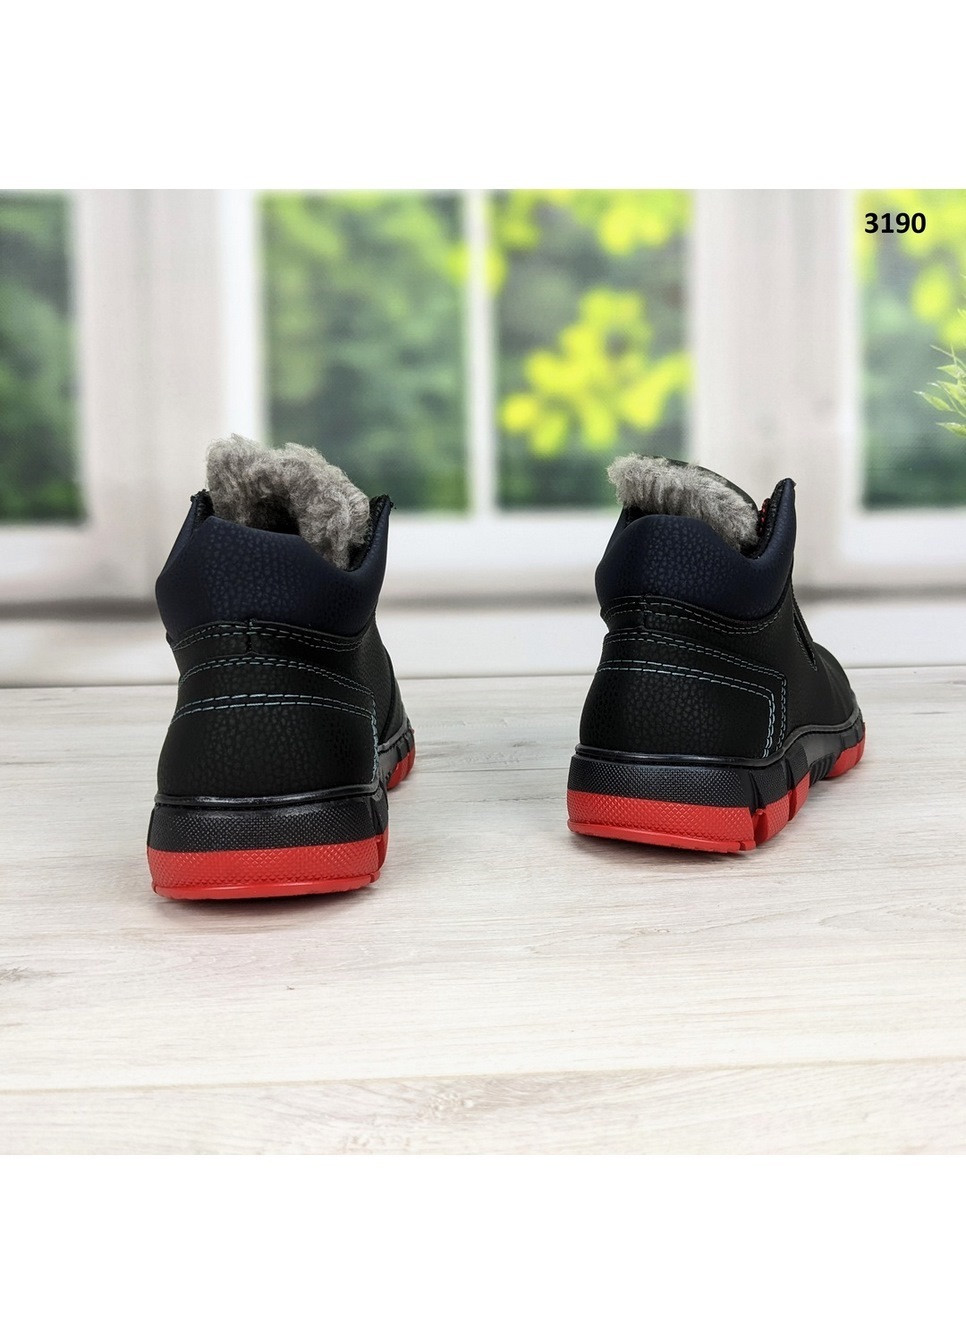 Черные зимние ботинки мужские зимние Kluchkovskyy